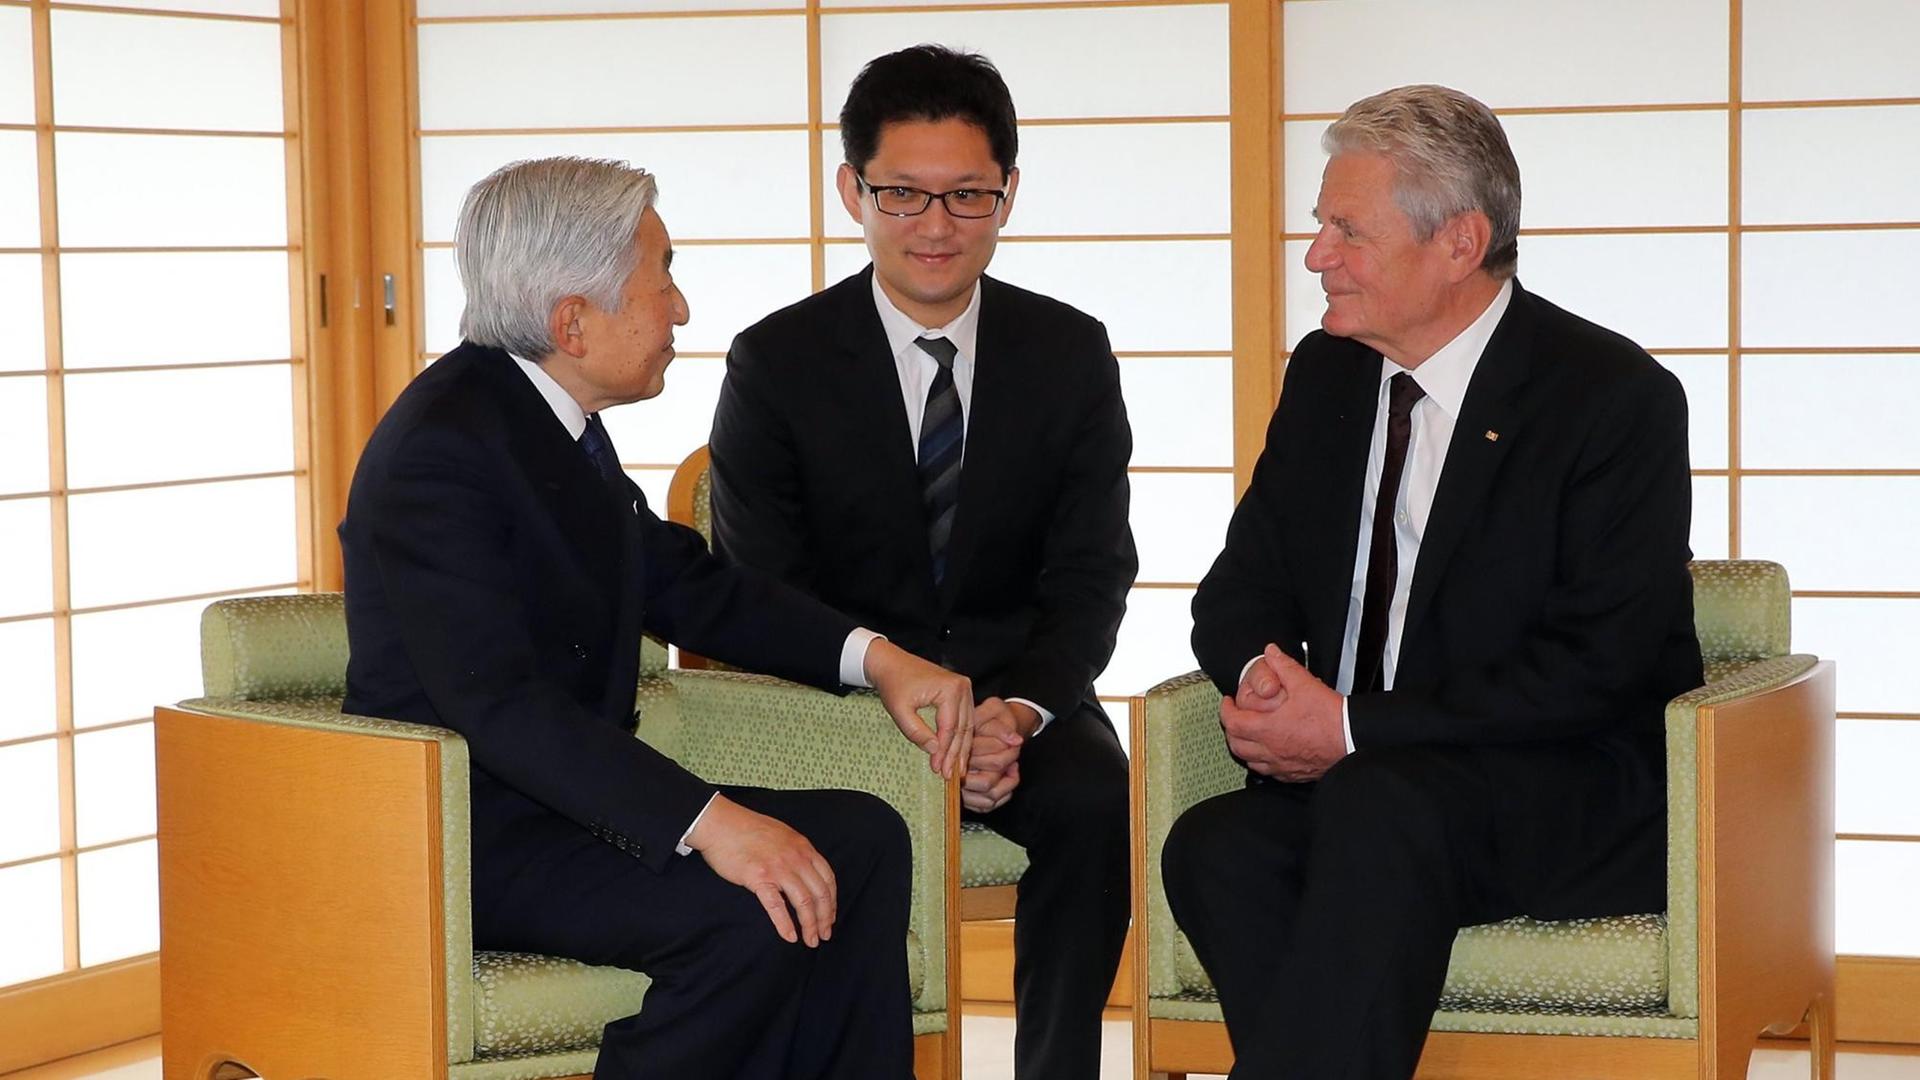 Bundespräsident Joachim Gauck (r) wird am 15.11.2016 in Tokio in Japan von Kaiser Akihito zu einem Gespräch empfangen. In der Mitte ein Dolmetscher. Das deutsche Staatsoberhaupt hält sich zu einem fünftägigen Besuch in Japan auf.